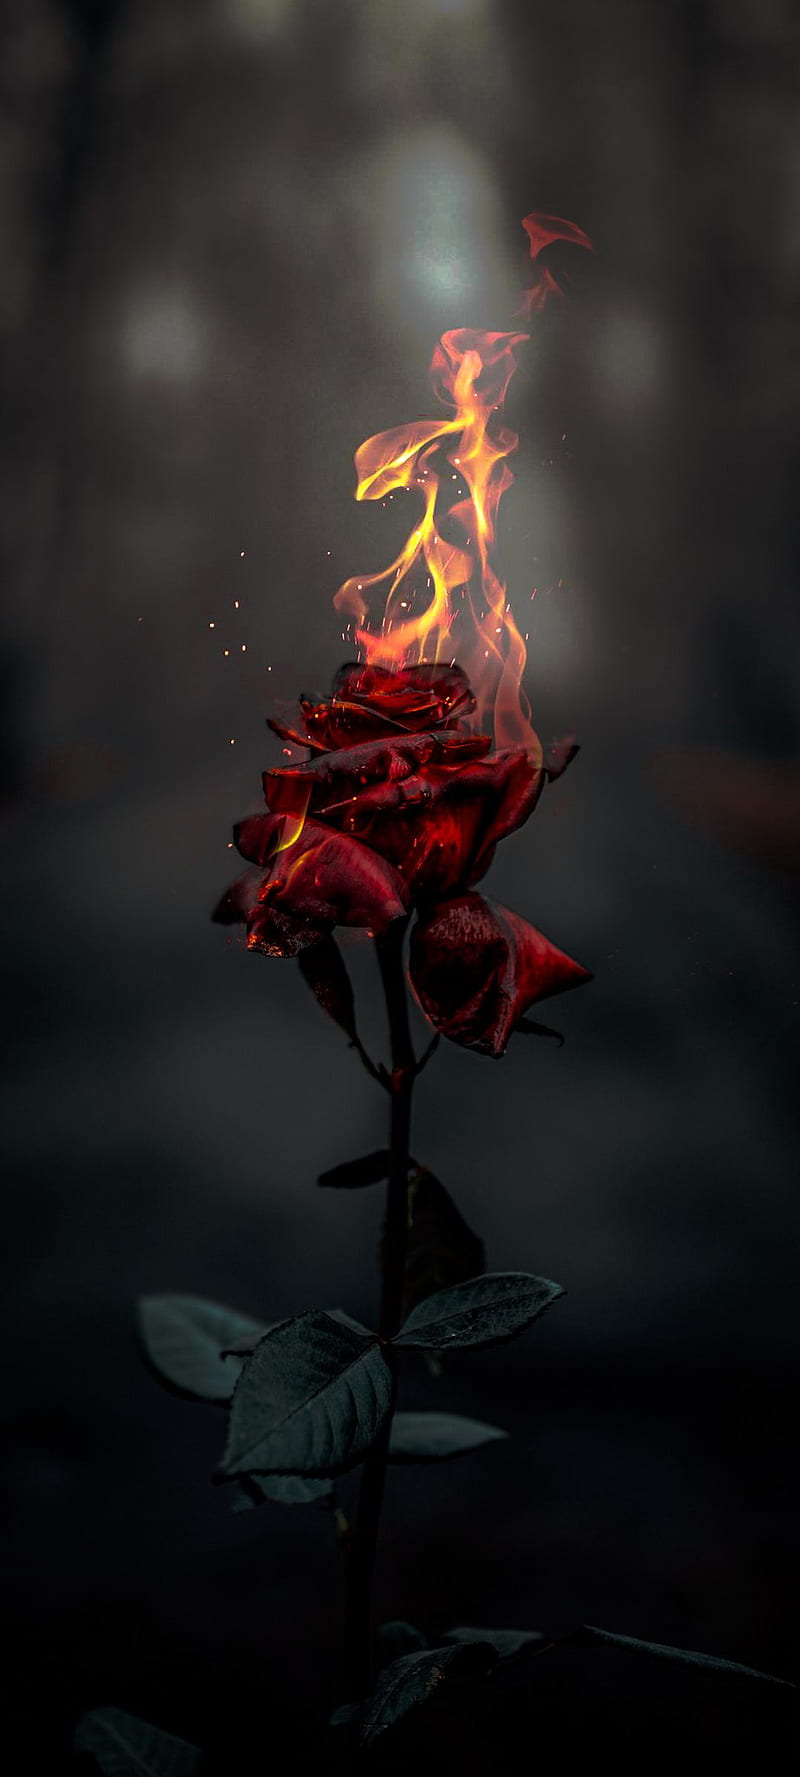 HD burning rose wallpapers | Peakpx